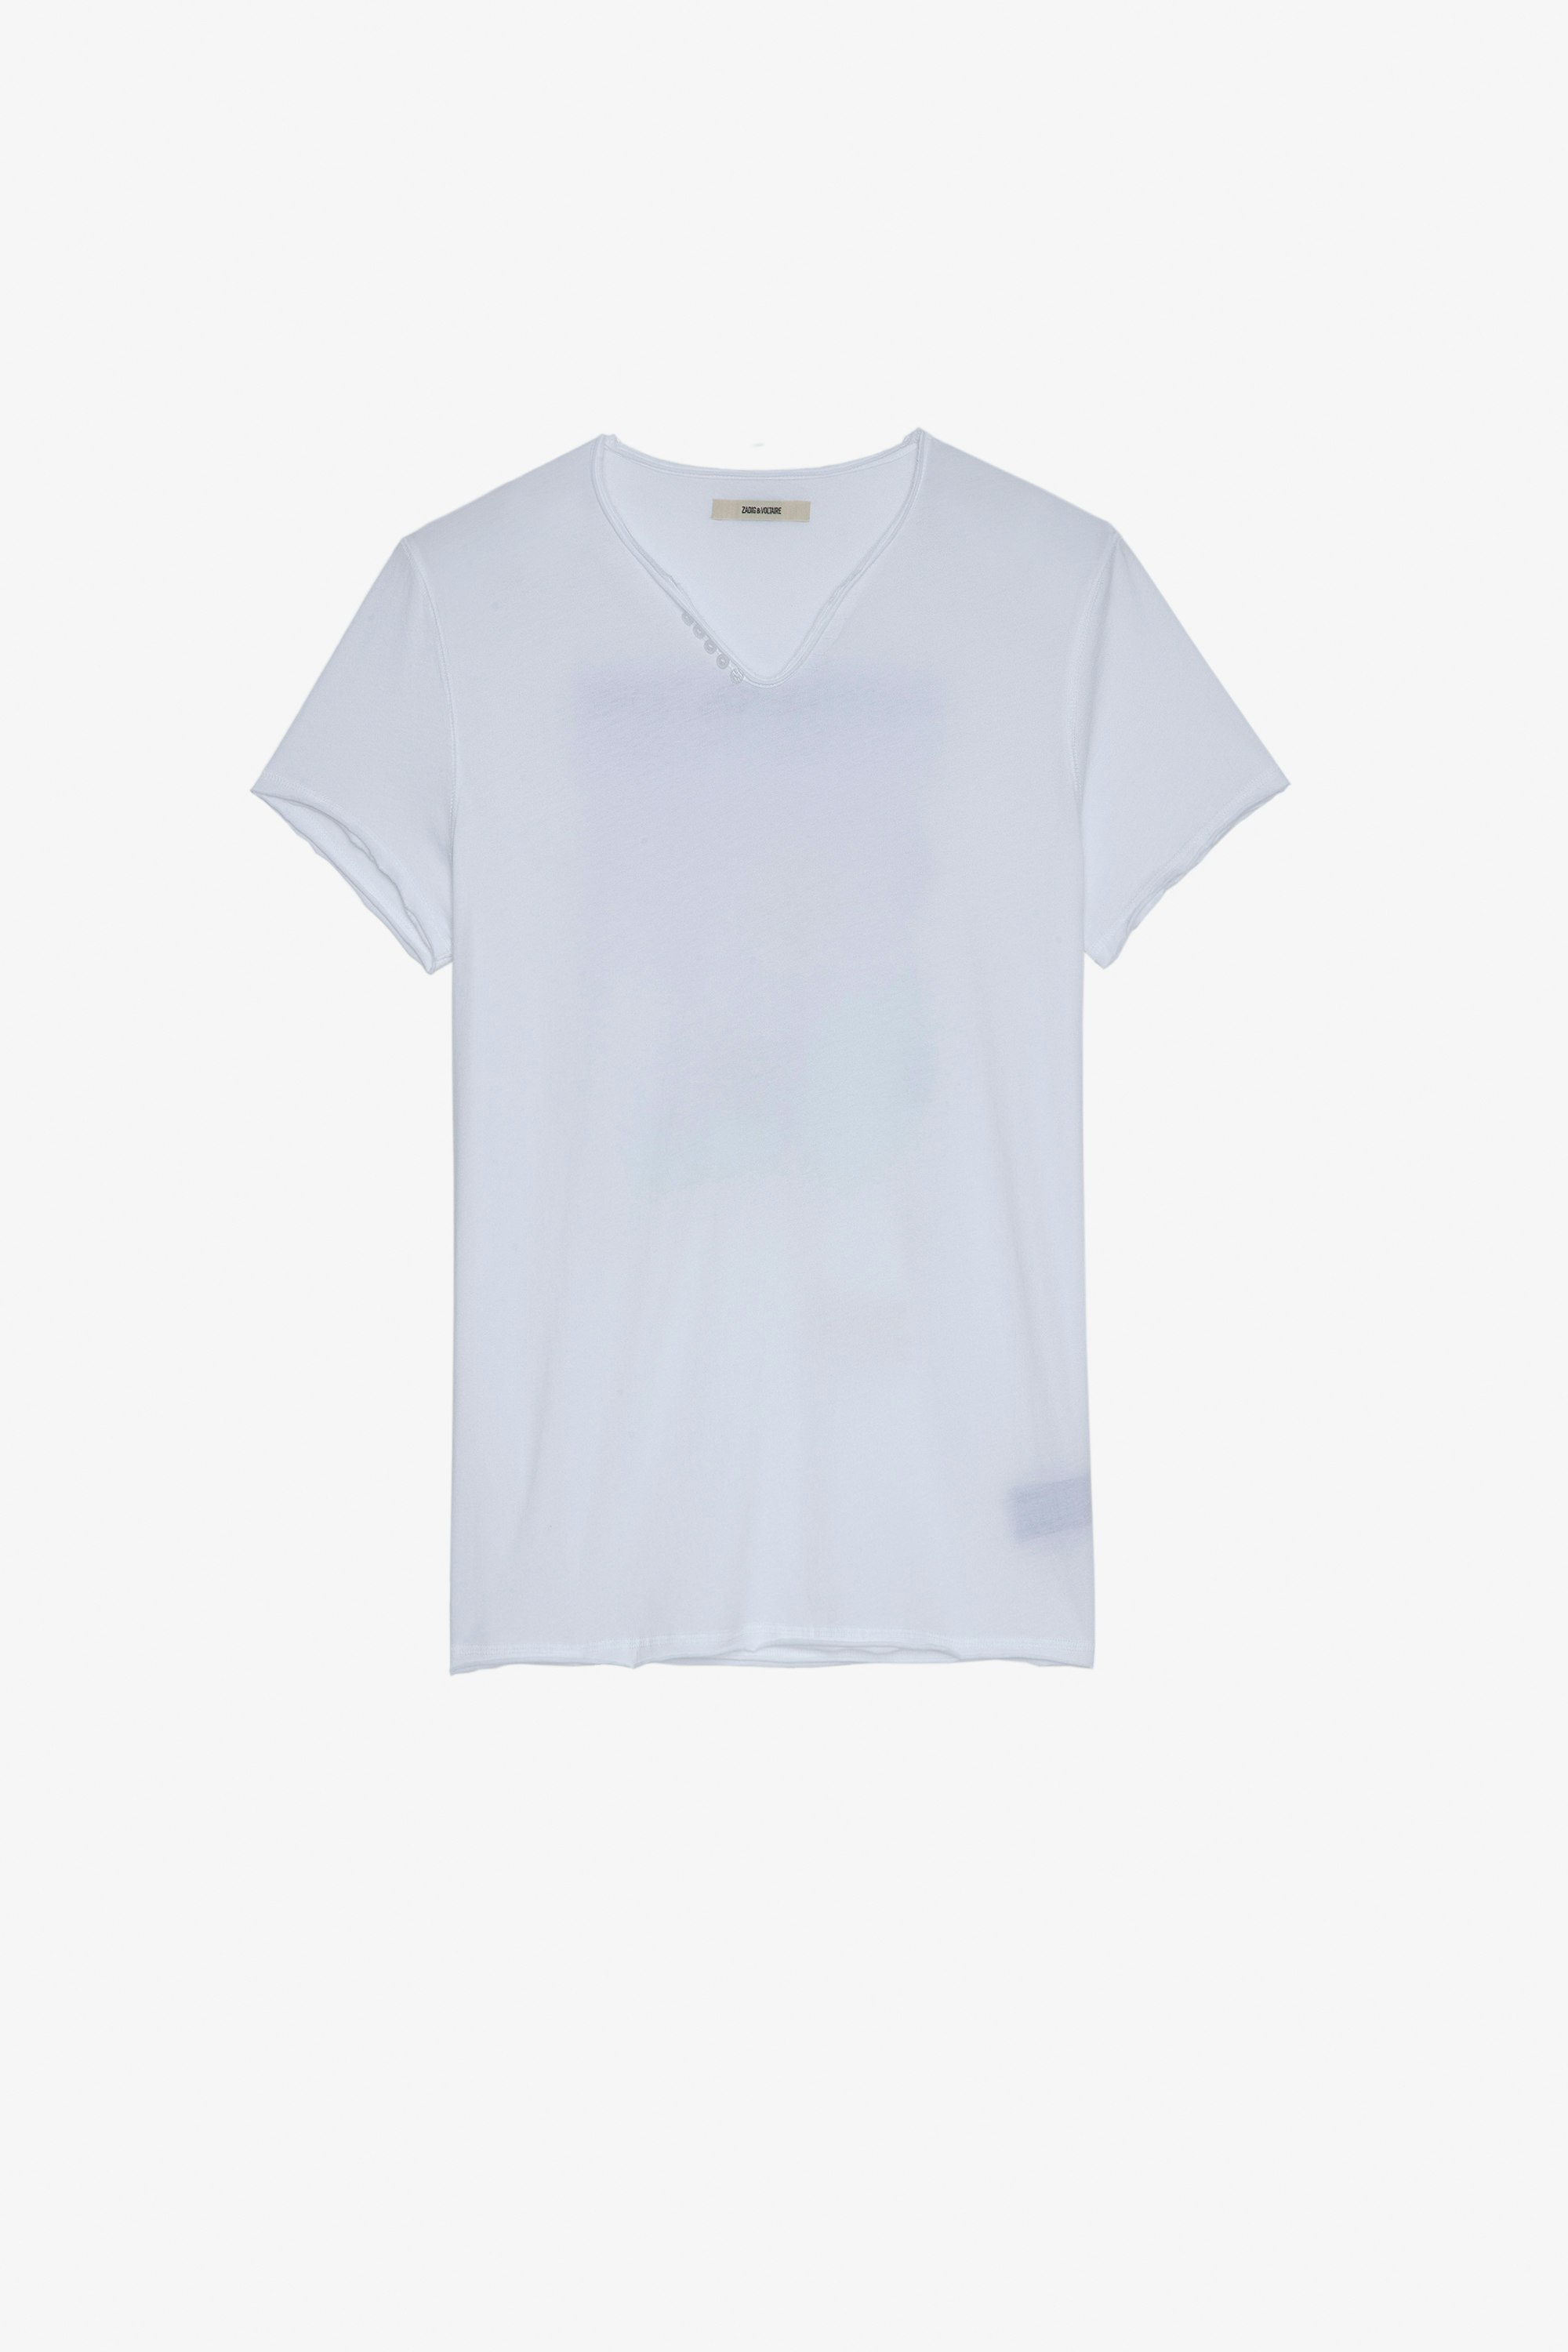 Camiseta Monastir Camiseta de algodón color blanco de cuello panadero con estampado fotográfico de palmera en la espalda Hombre